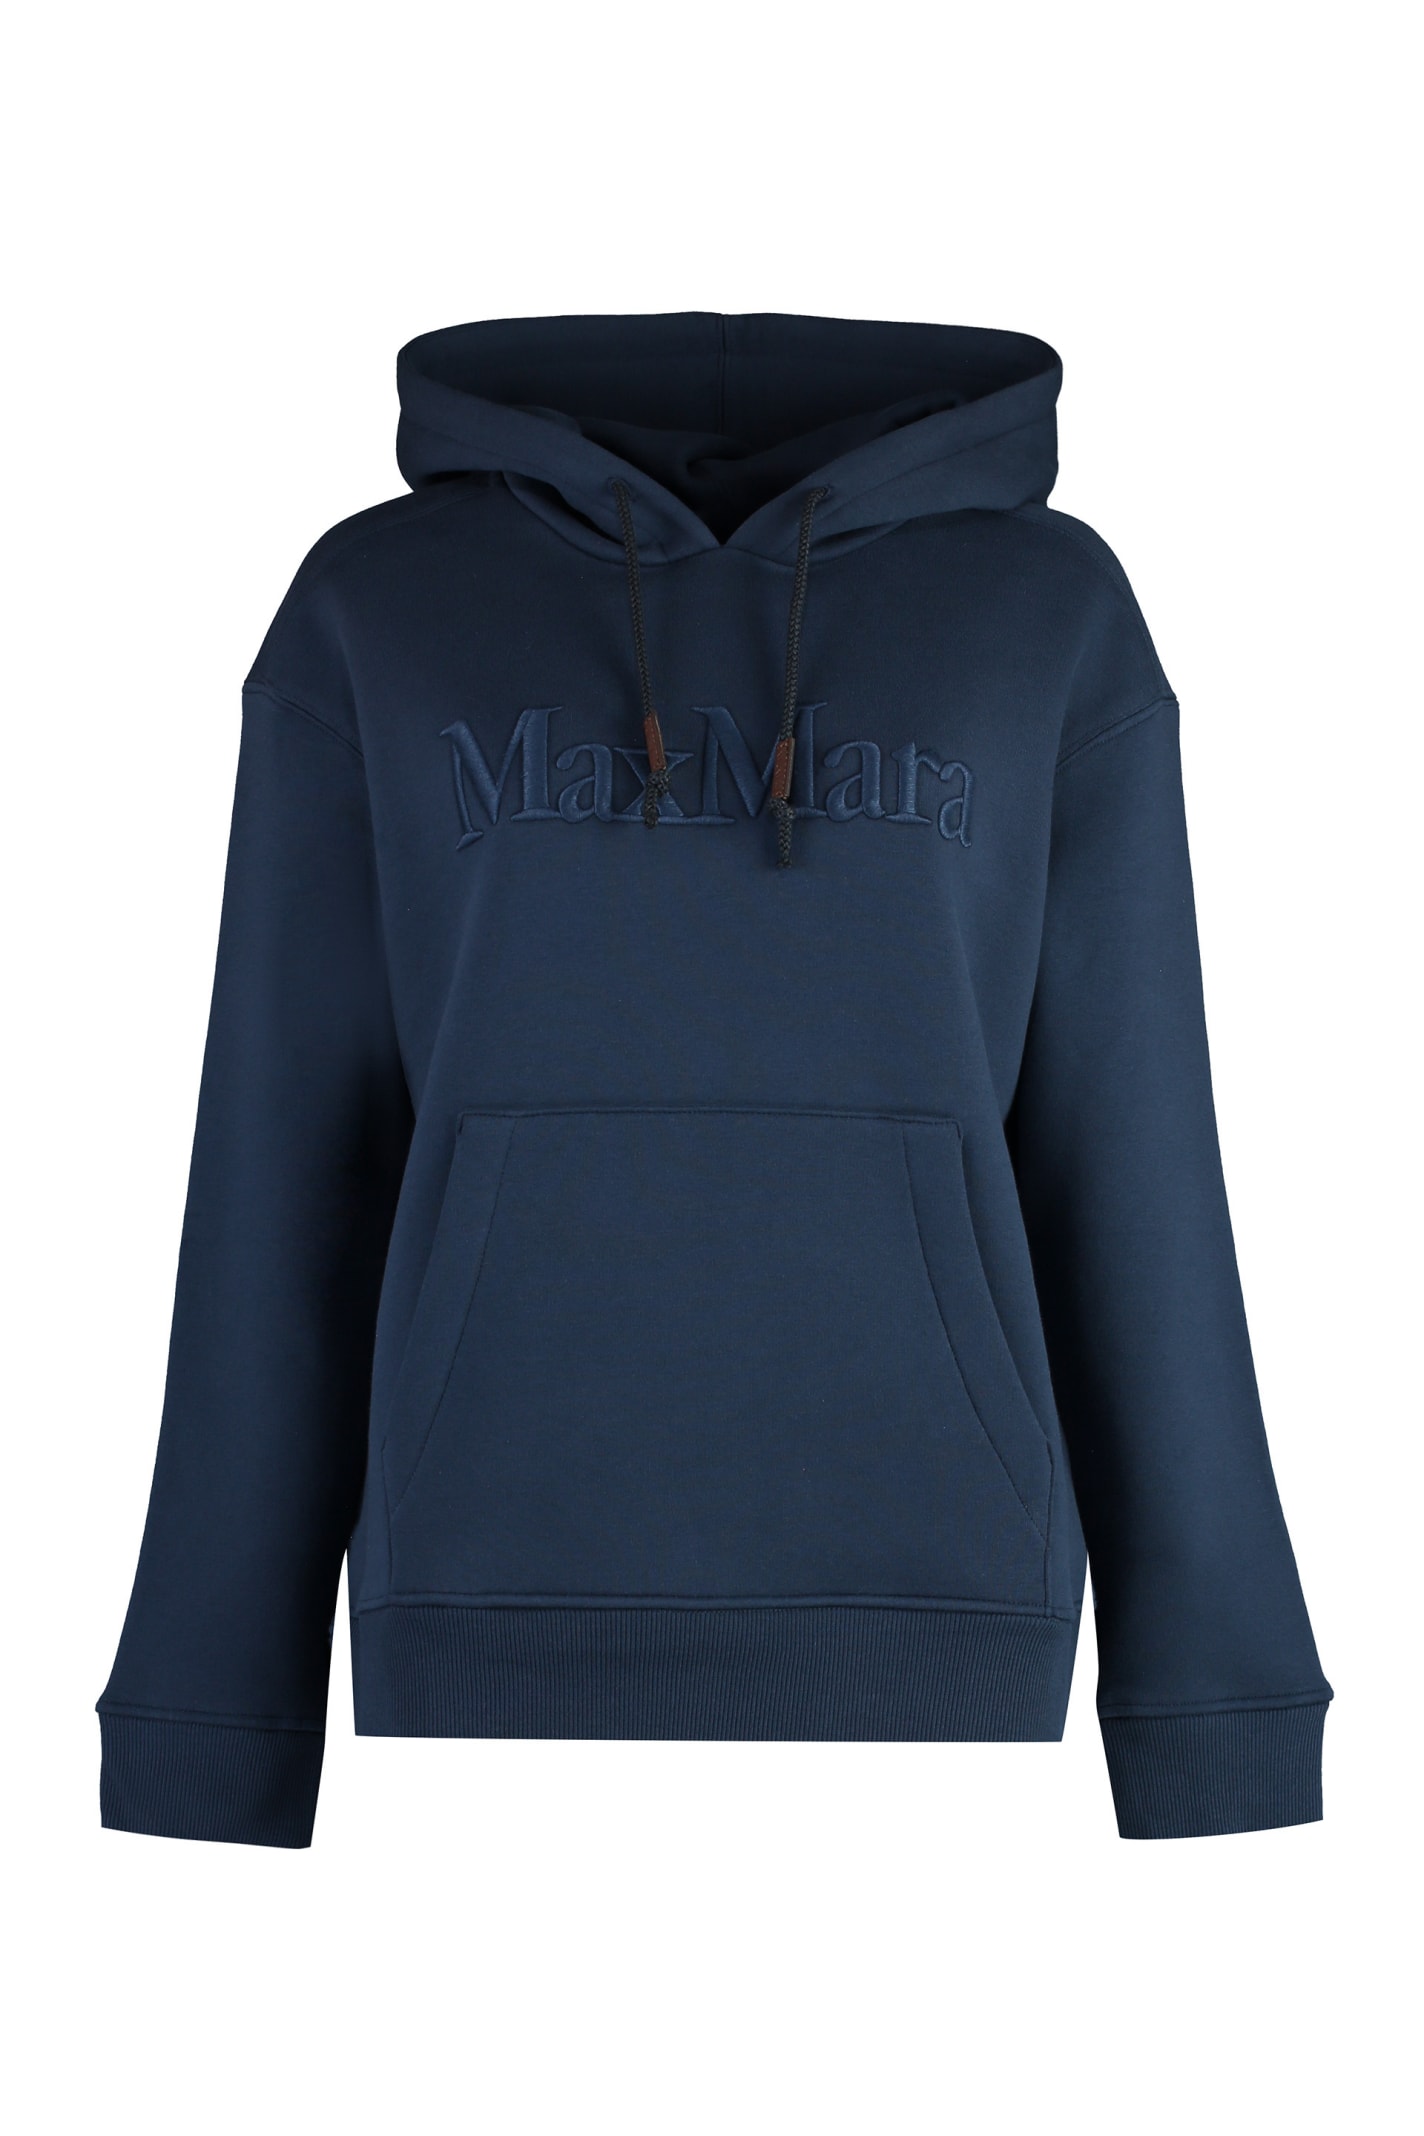 'S Max Mara Agre Hooded Sweatshirt